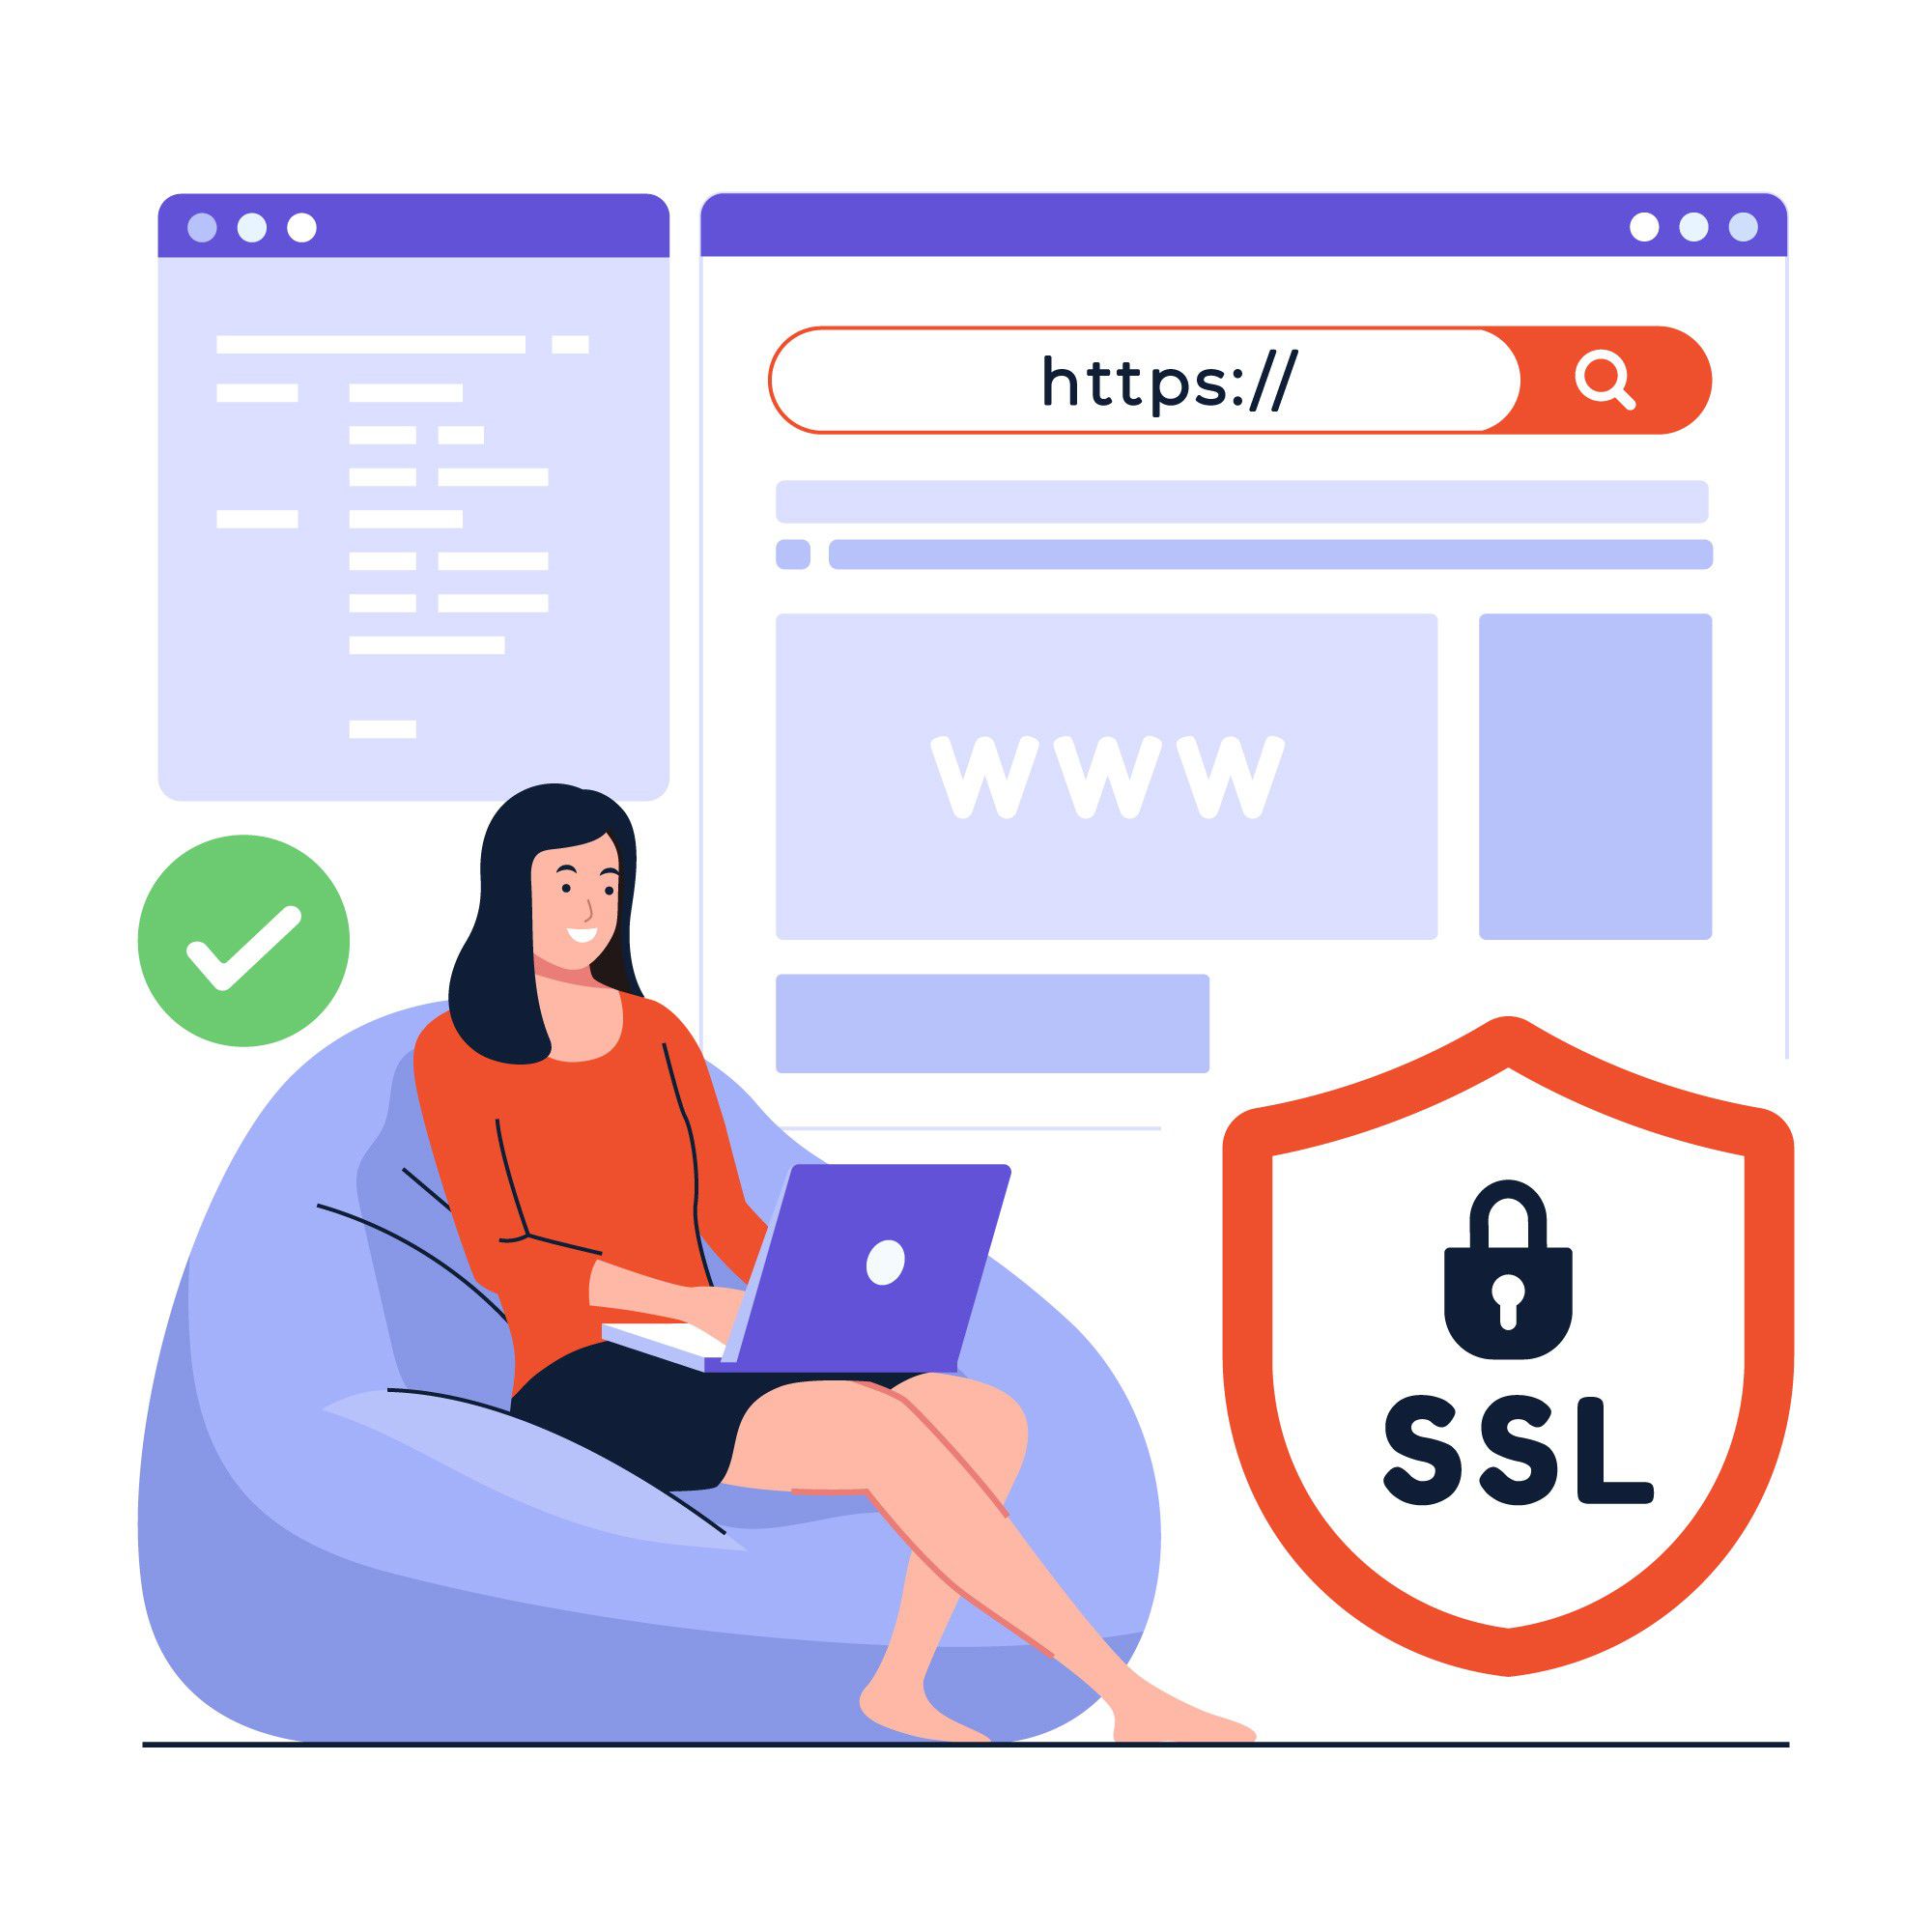 Illustration montrant le logo SSL et le HTTPS pour renforcer la sécurité d'un site internet.